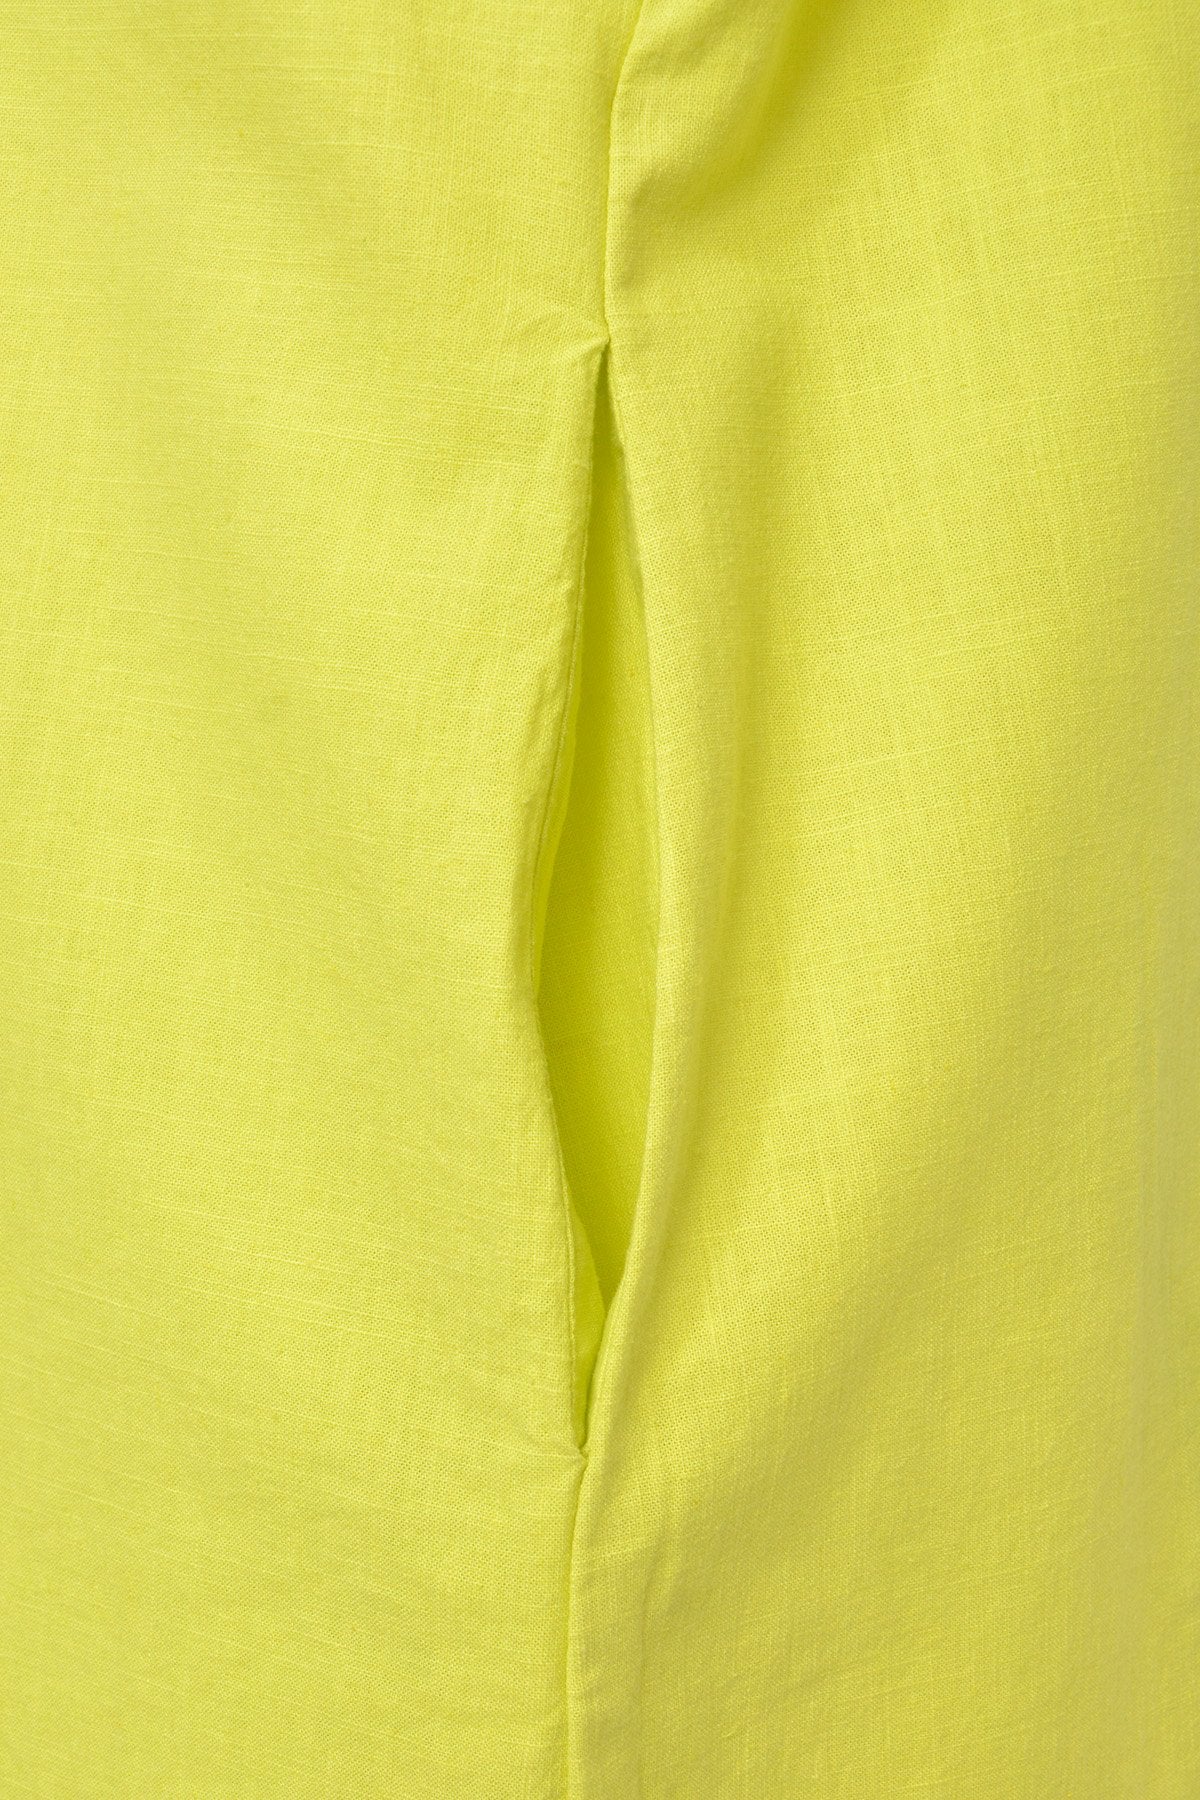 Cotton Linen Shirt Collar Dress (Lime)